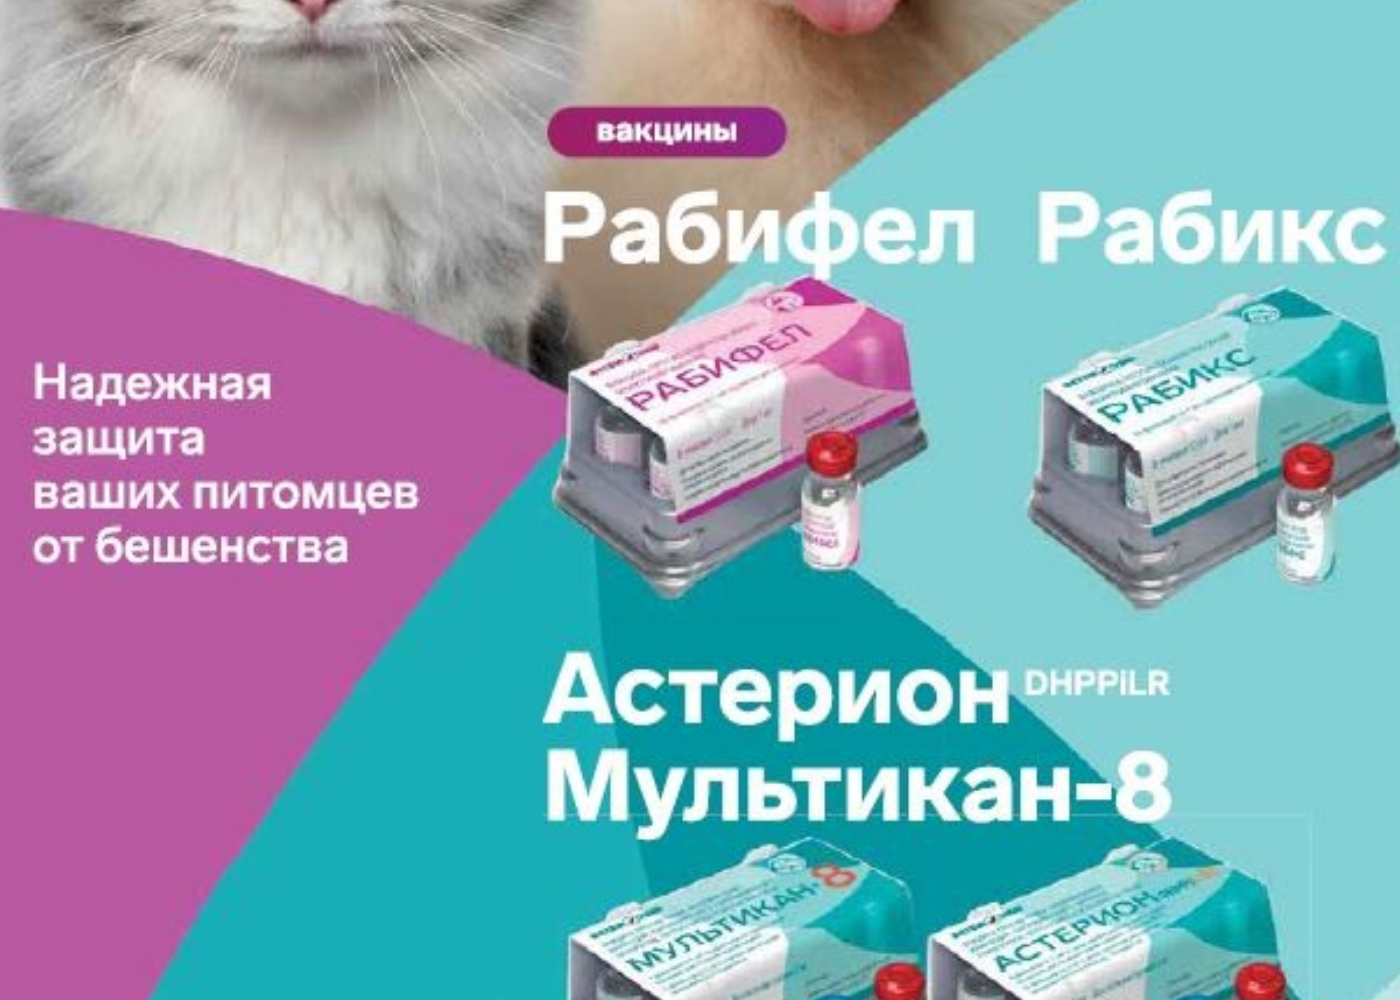 Таблетки от бешенства для котов. Вакцина рабикс против бешенства